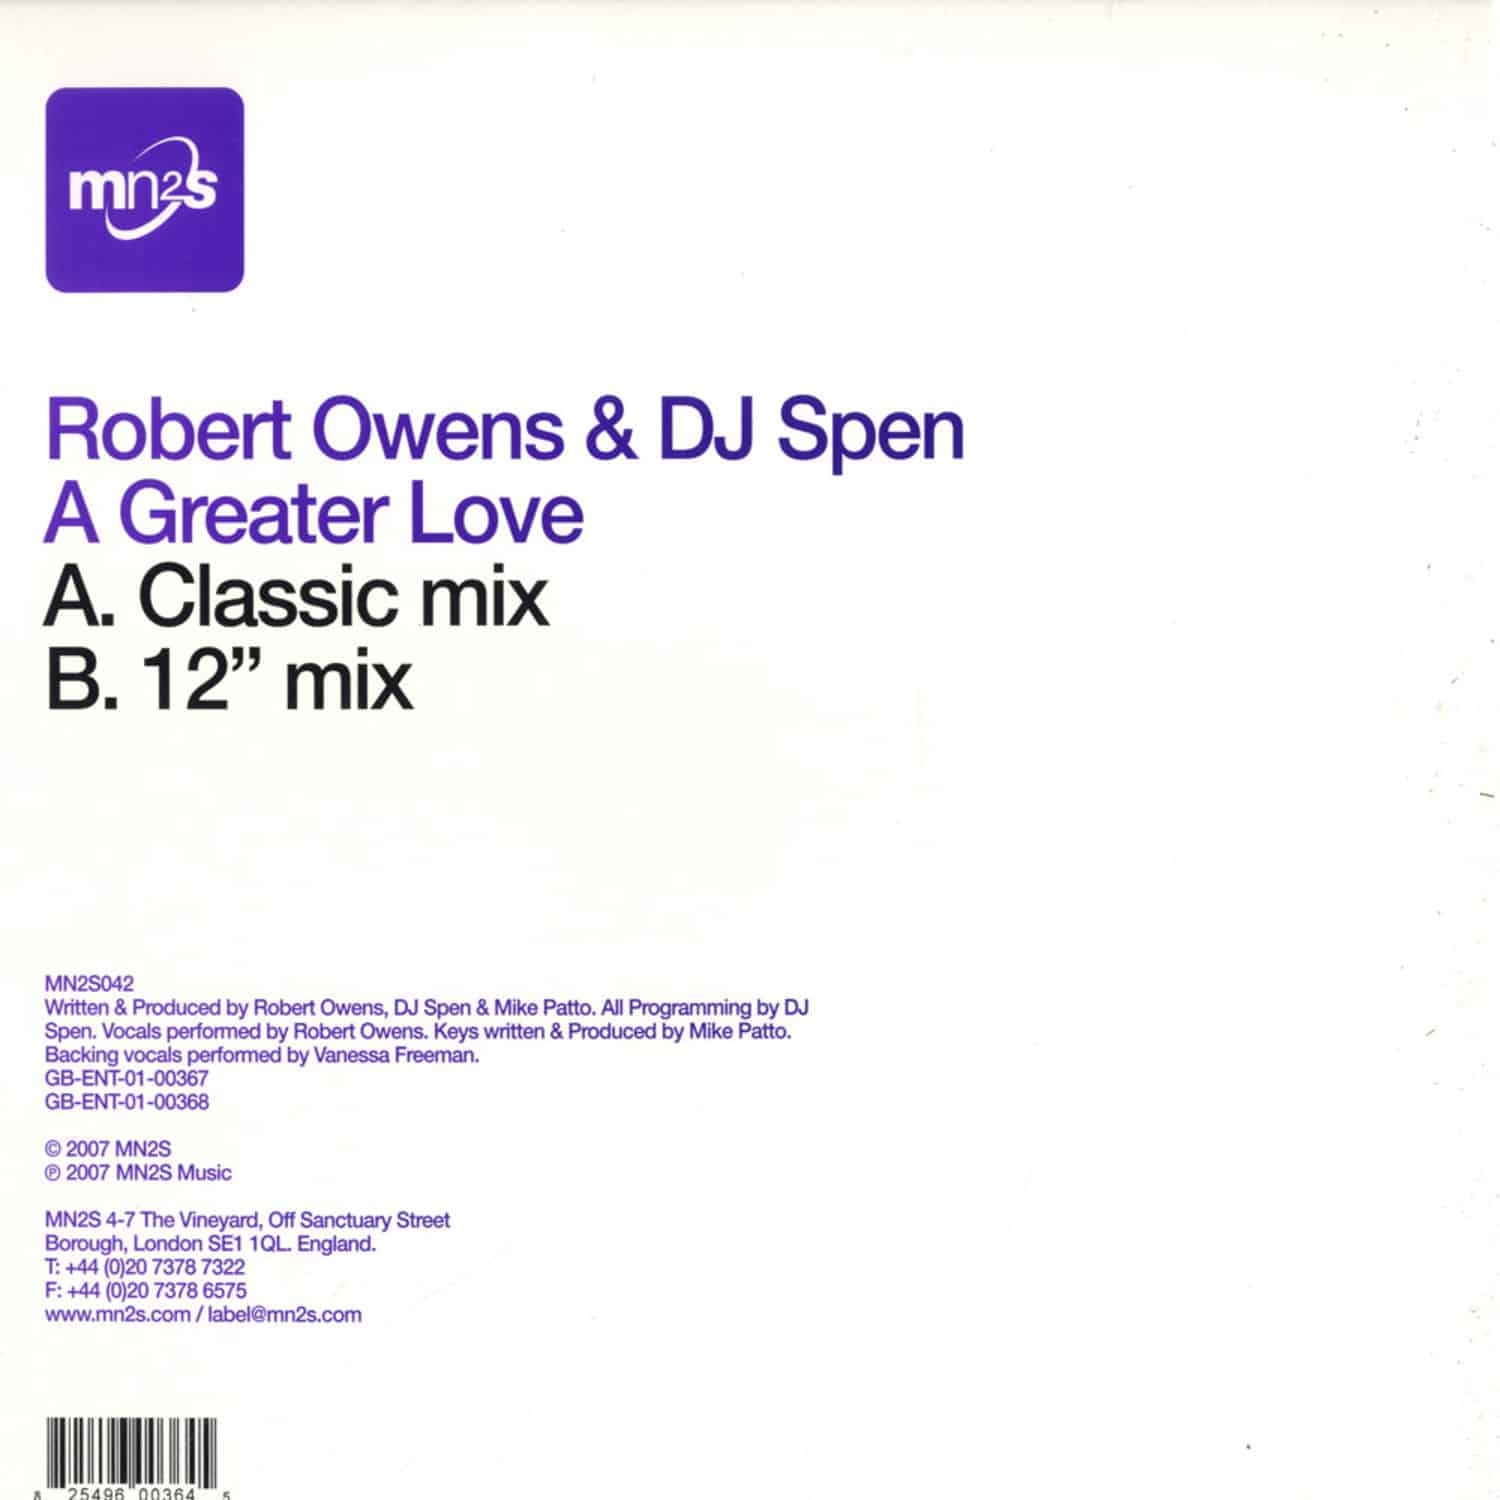 Robert Owens & Dj Spen - A GREATER LOVE